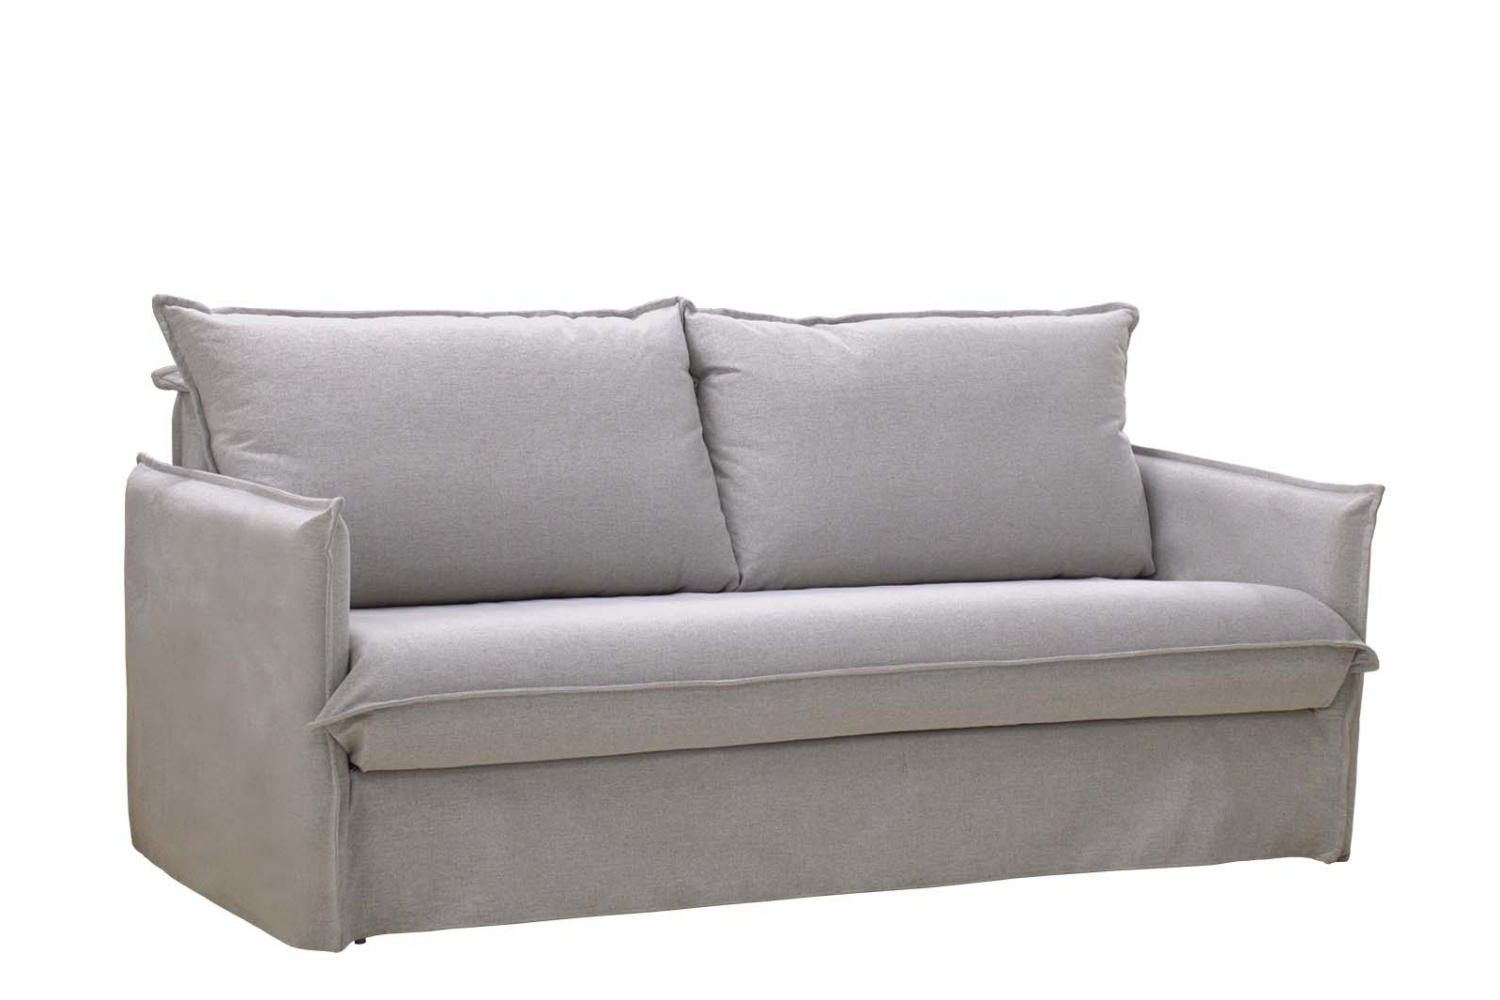 sofa cama de facil apertura Comprar en tienda de muebles baratos